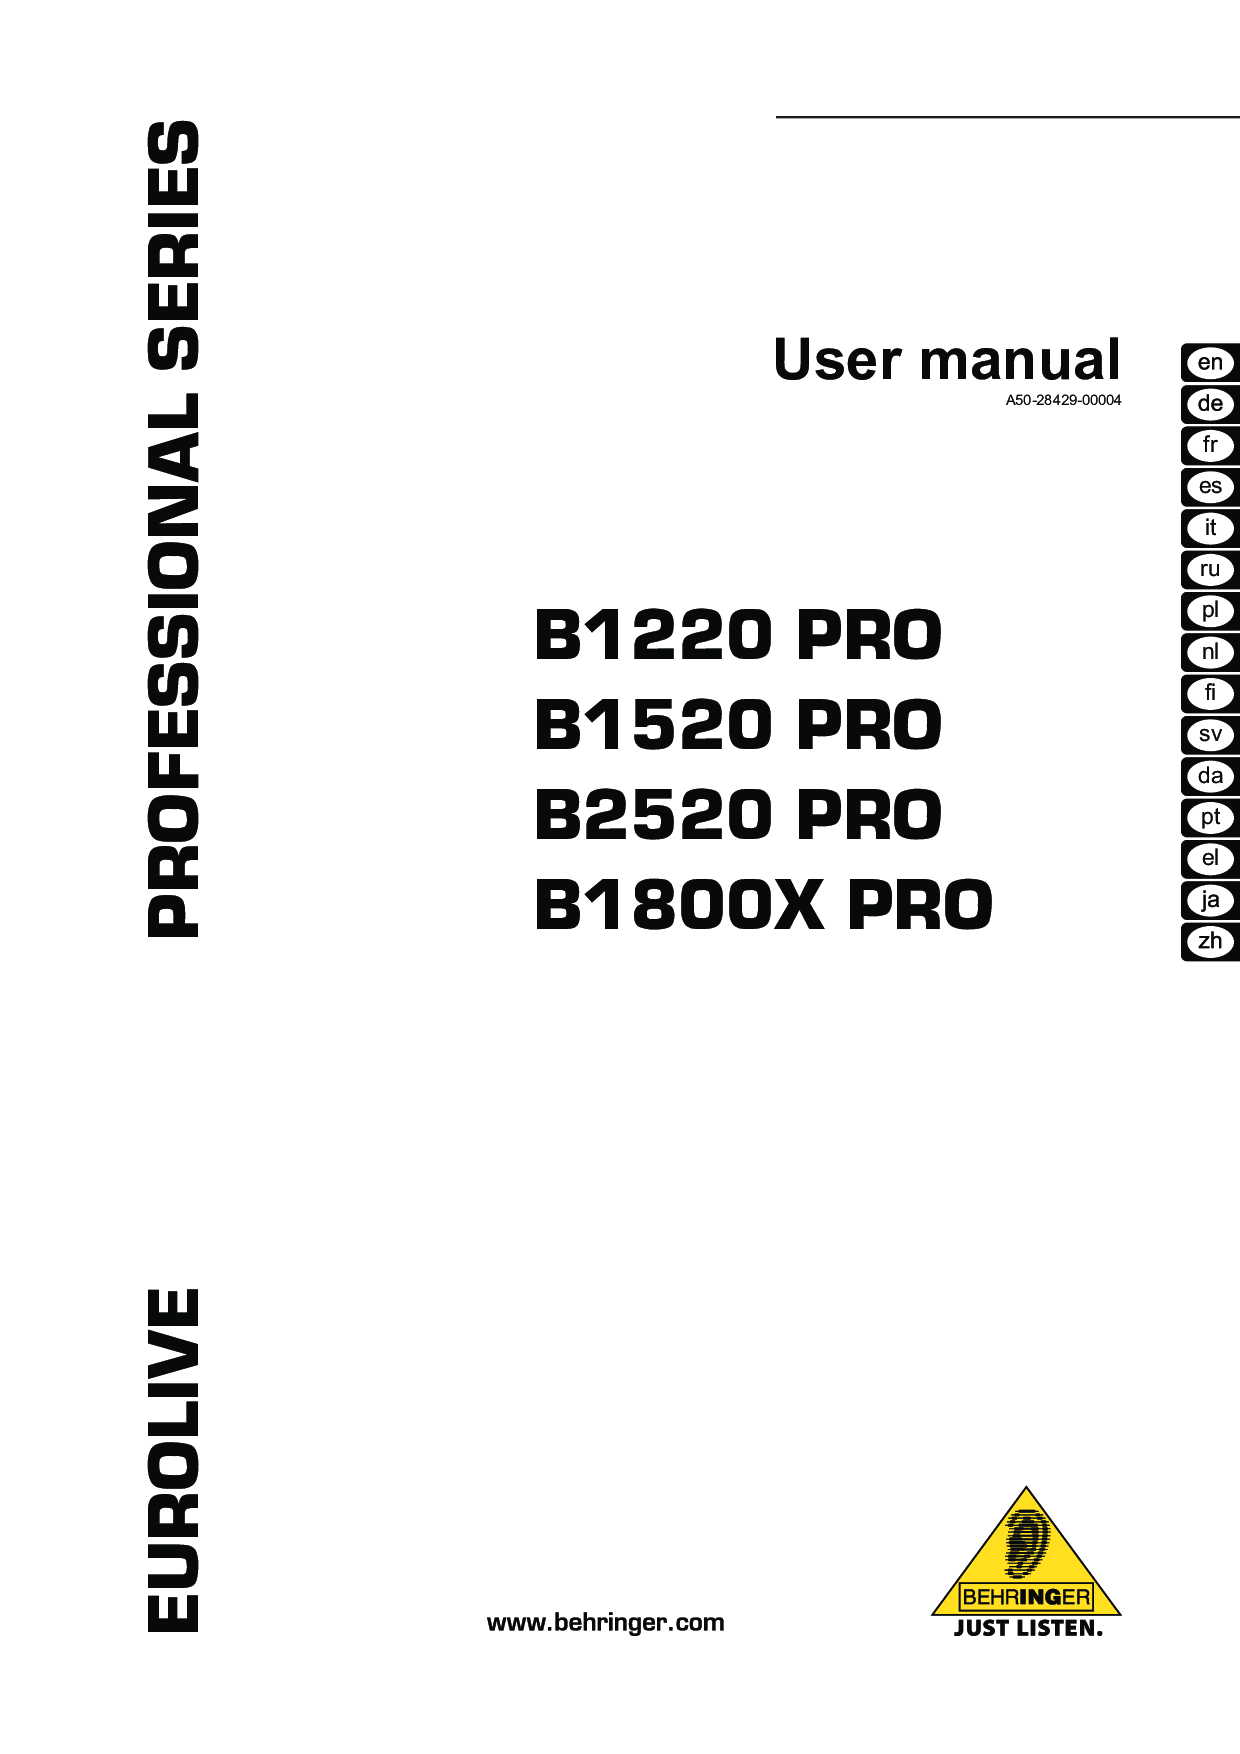 Behringer B1800x Pro, B2520 PRO, B1520 PRO User Manual 2